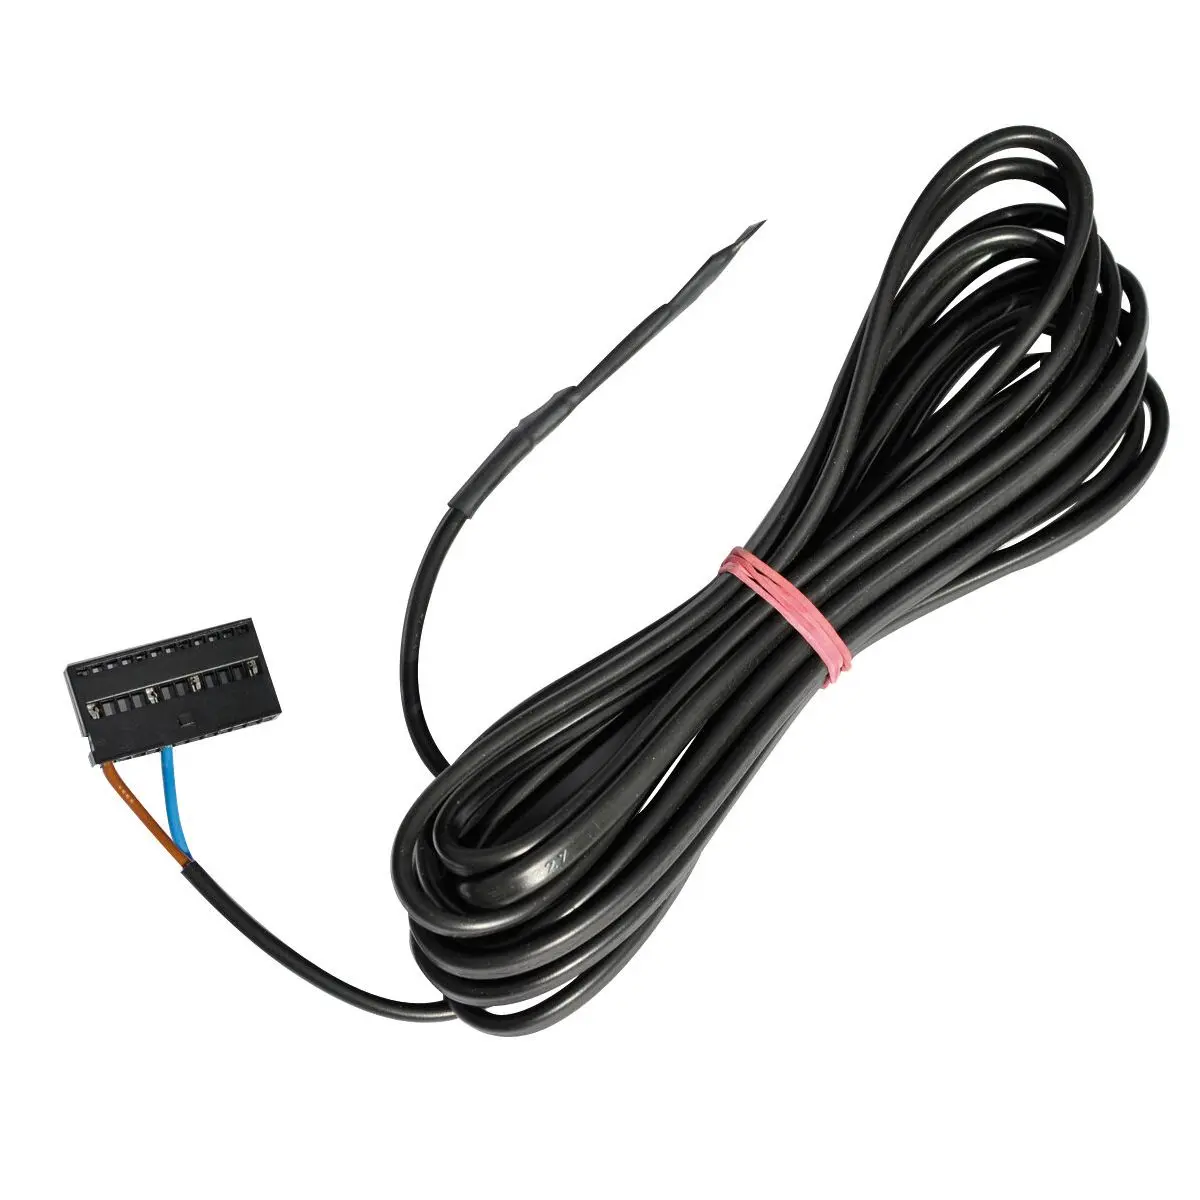 Senzor de la distanță FF - lungime cablu 4 m pentru încălzitoare electrice